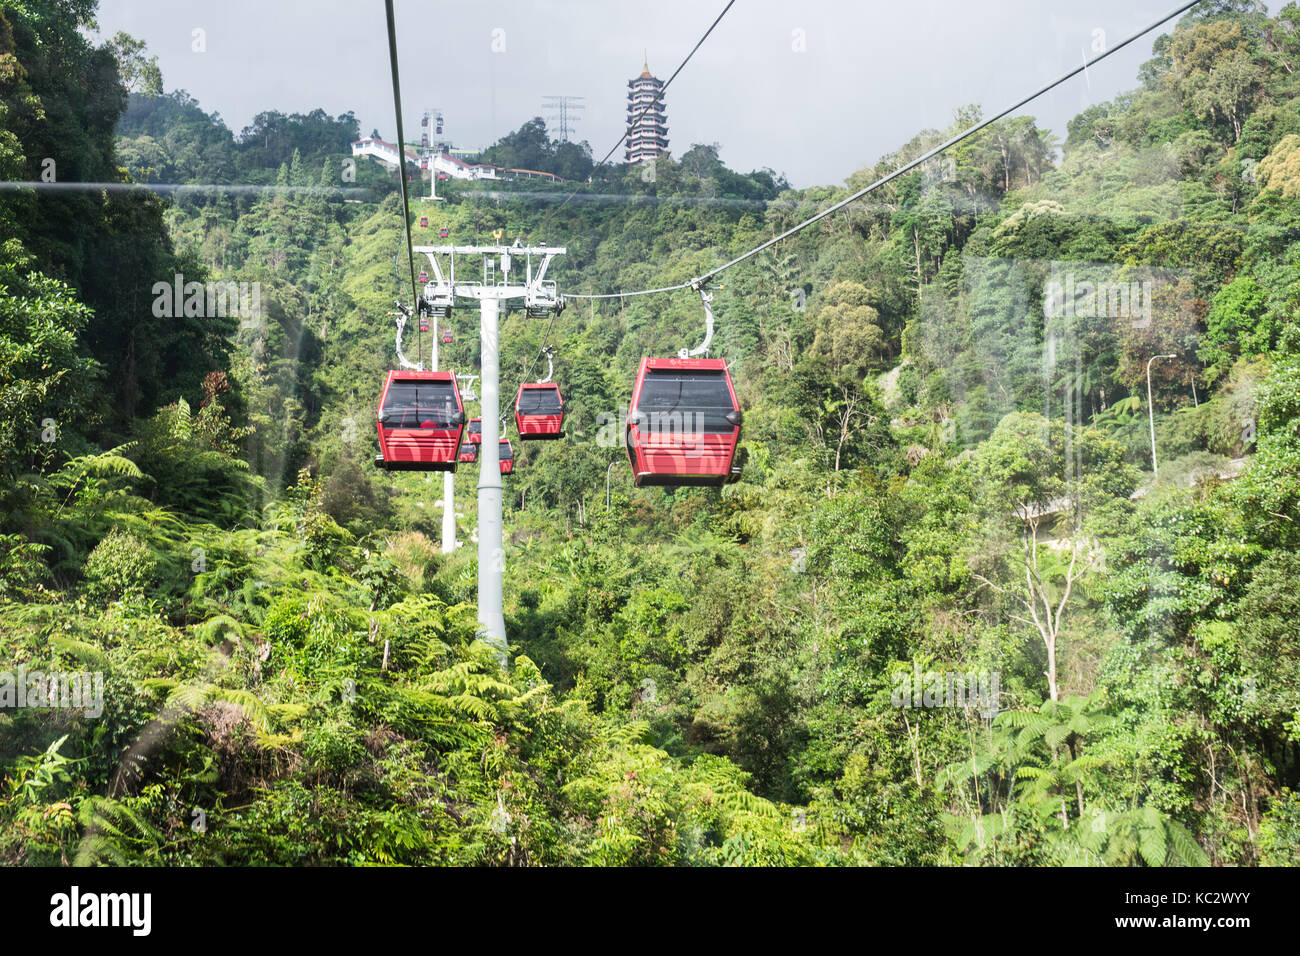 Cameron Highlands, Malaisie - février 11,2017 : touristes voyagent sur cable car de Genting skyway Banque D'Images